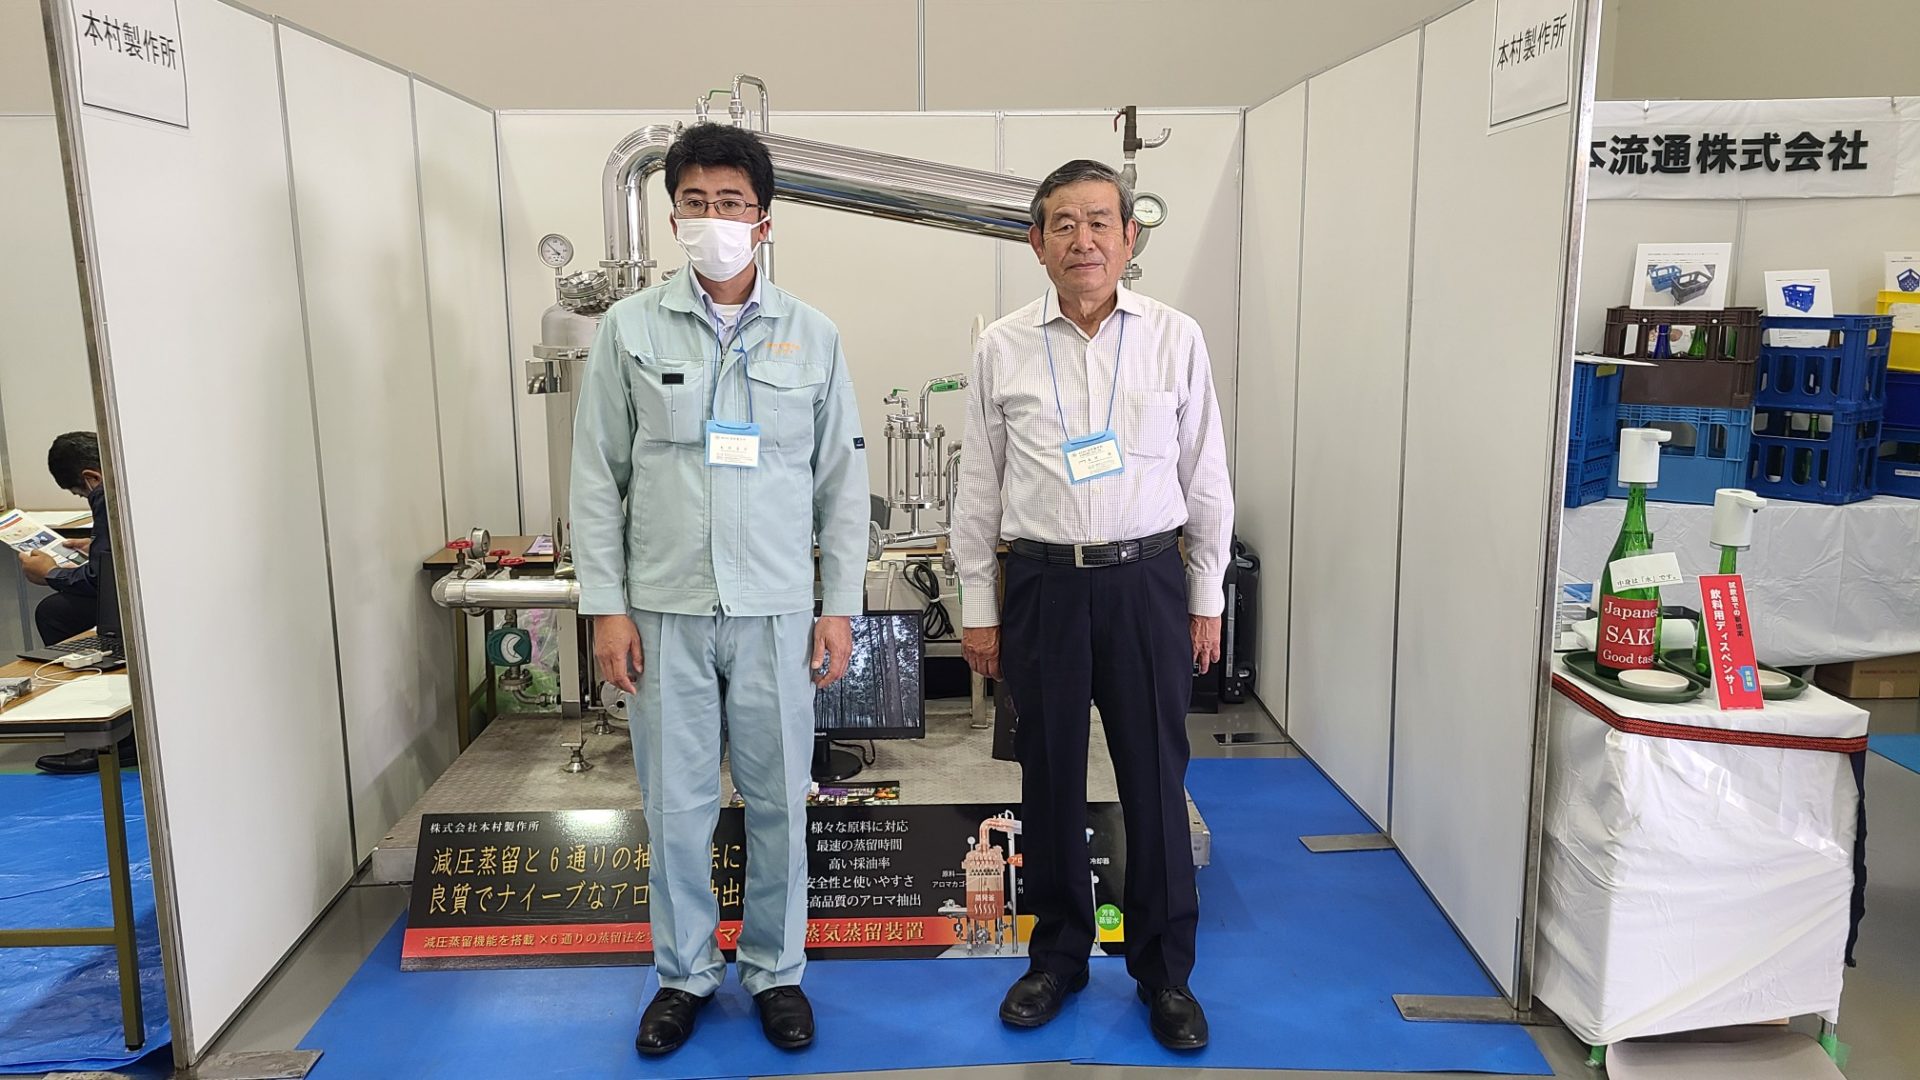 全国醸造機器用品展示会 2022 in 広島に出展しました。